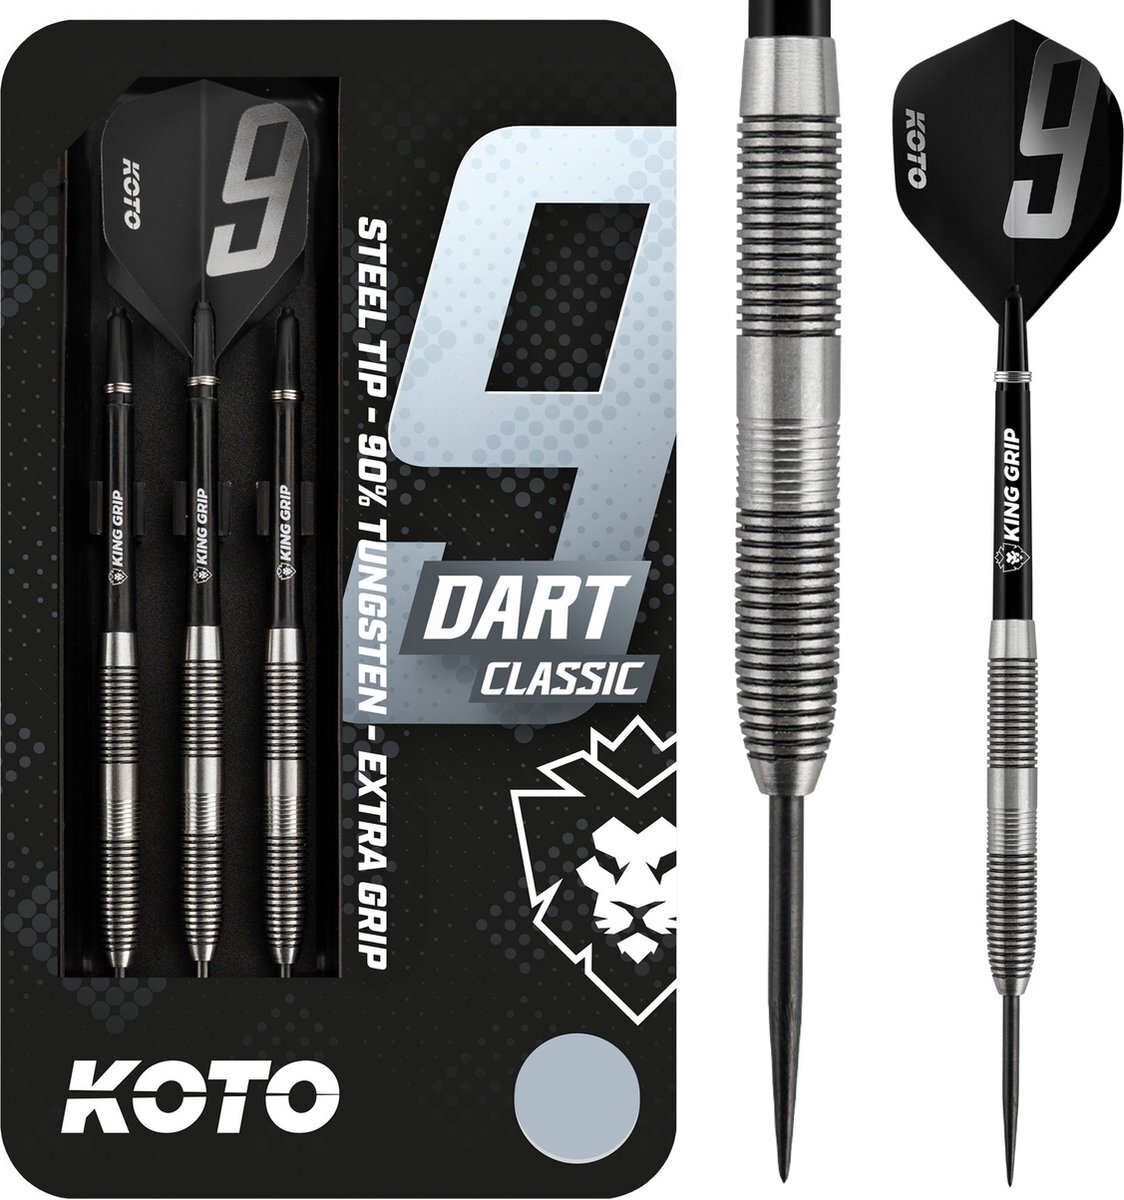 Koto 9-Dart Classic 90% - Dartpijlen - 23 Gram - Tungsten Darts - 3 Pijlen - Dartset - Met Dartcase